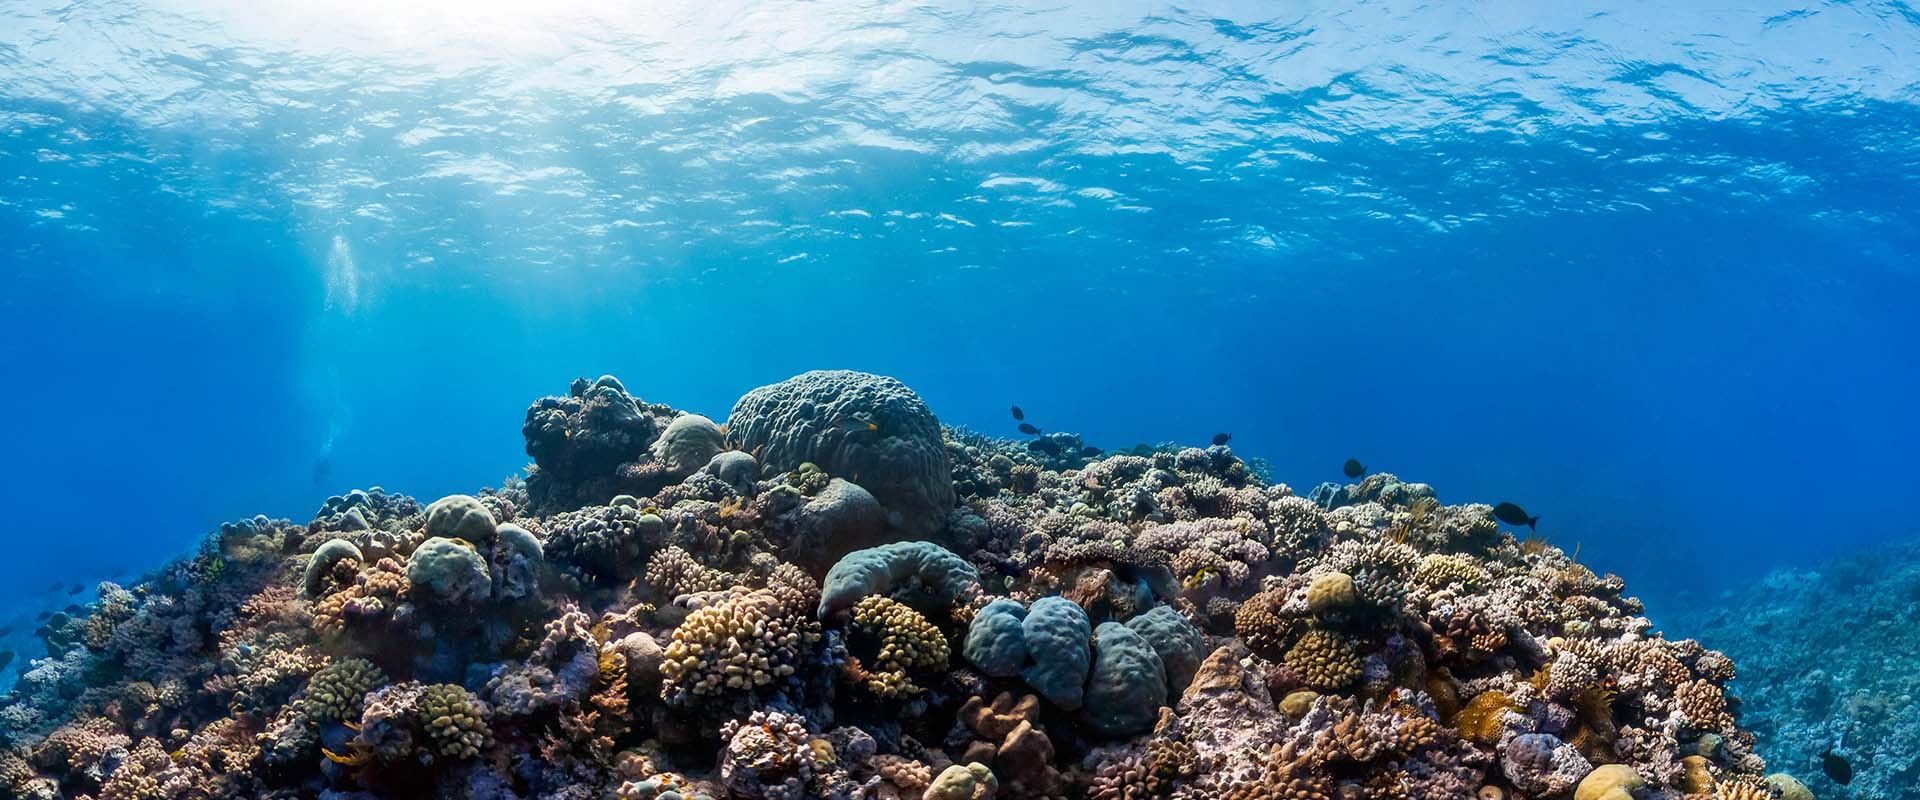 Ribbon Reef Liveaboard Diving